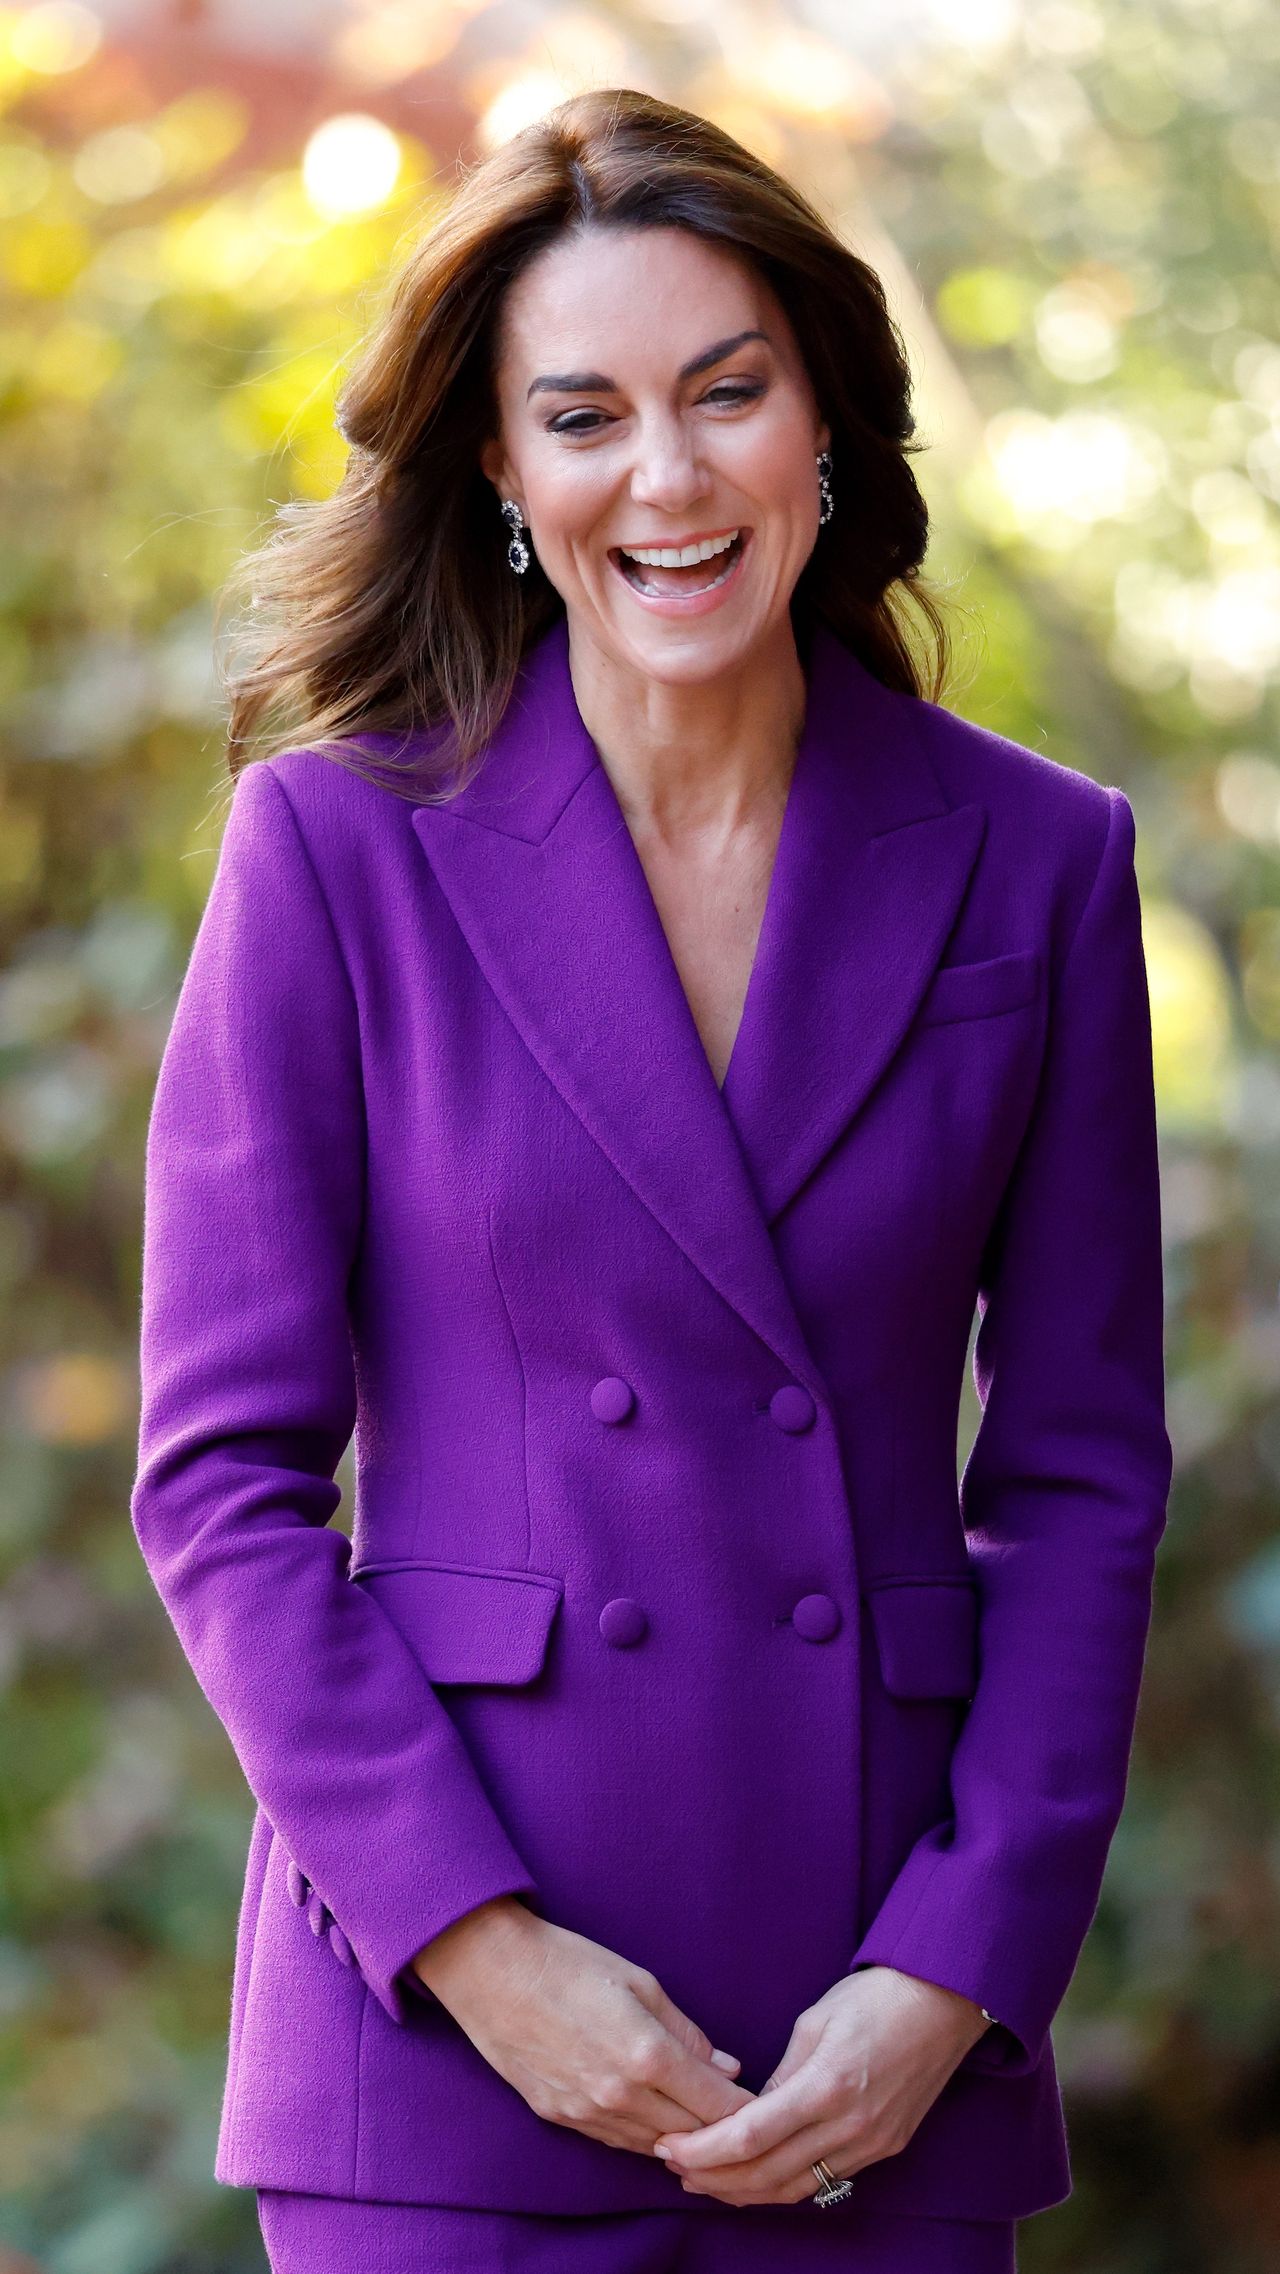 Księżna Kate olśniła w fioletowym garniturze